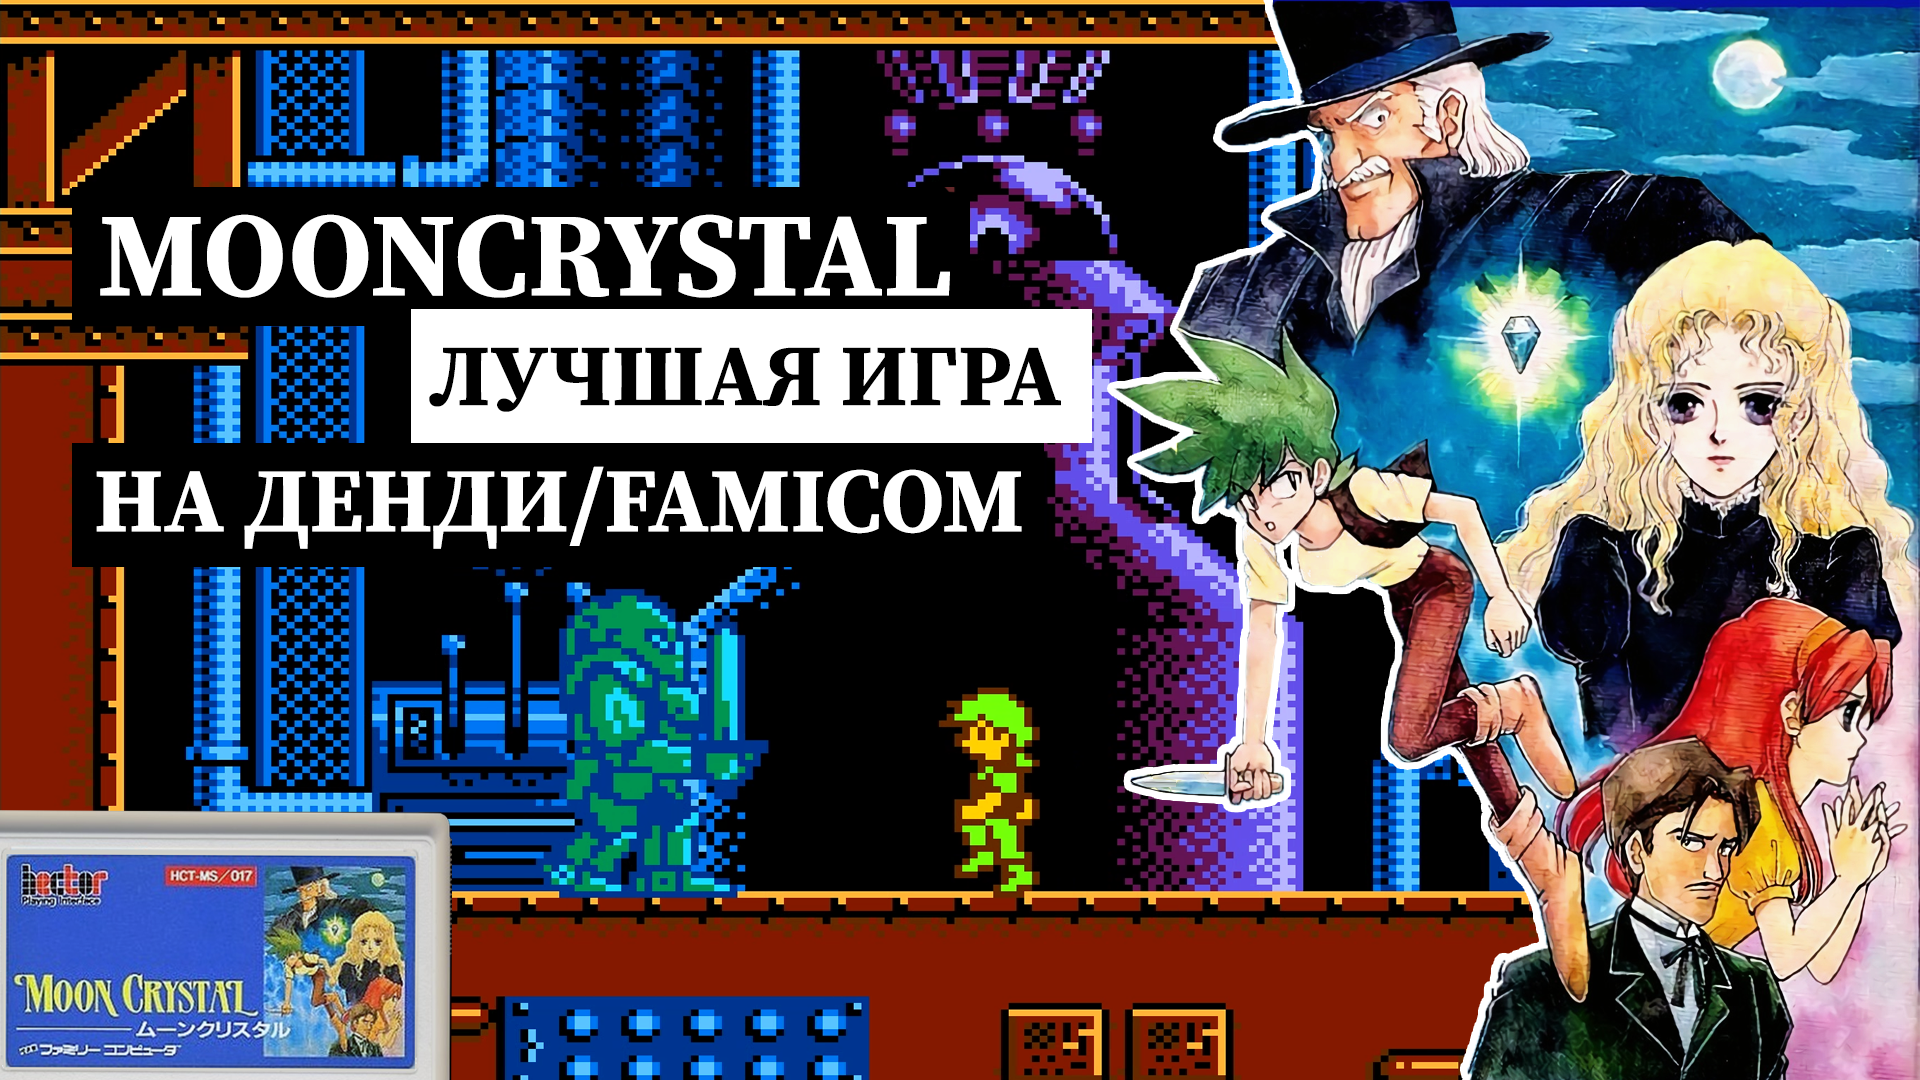 Лучшую сюжетная игру Moon Crystal на Денди/Famicom